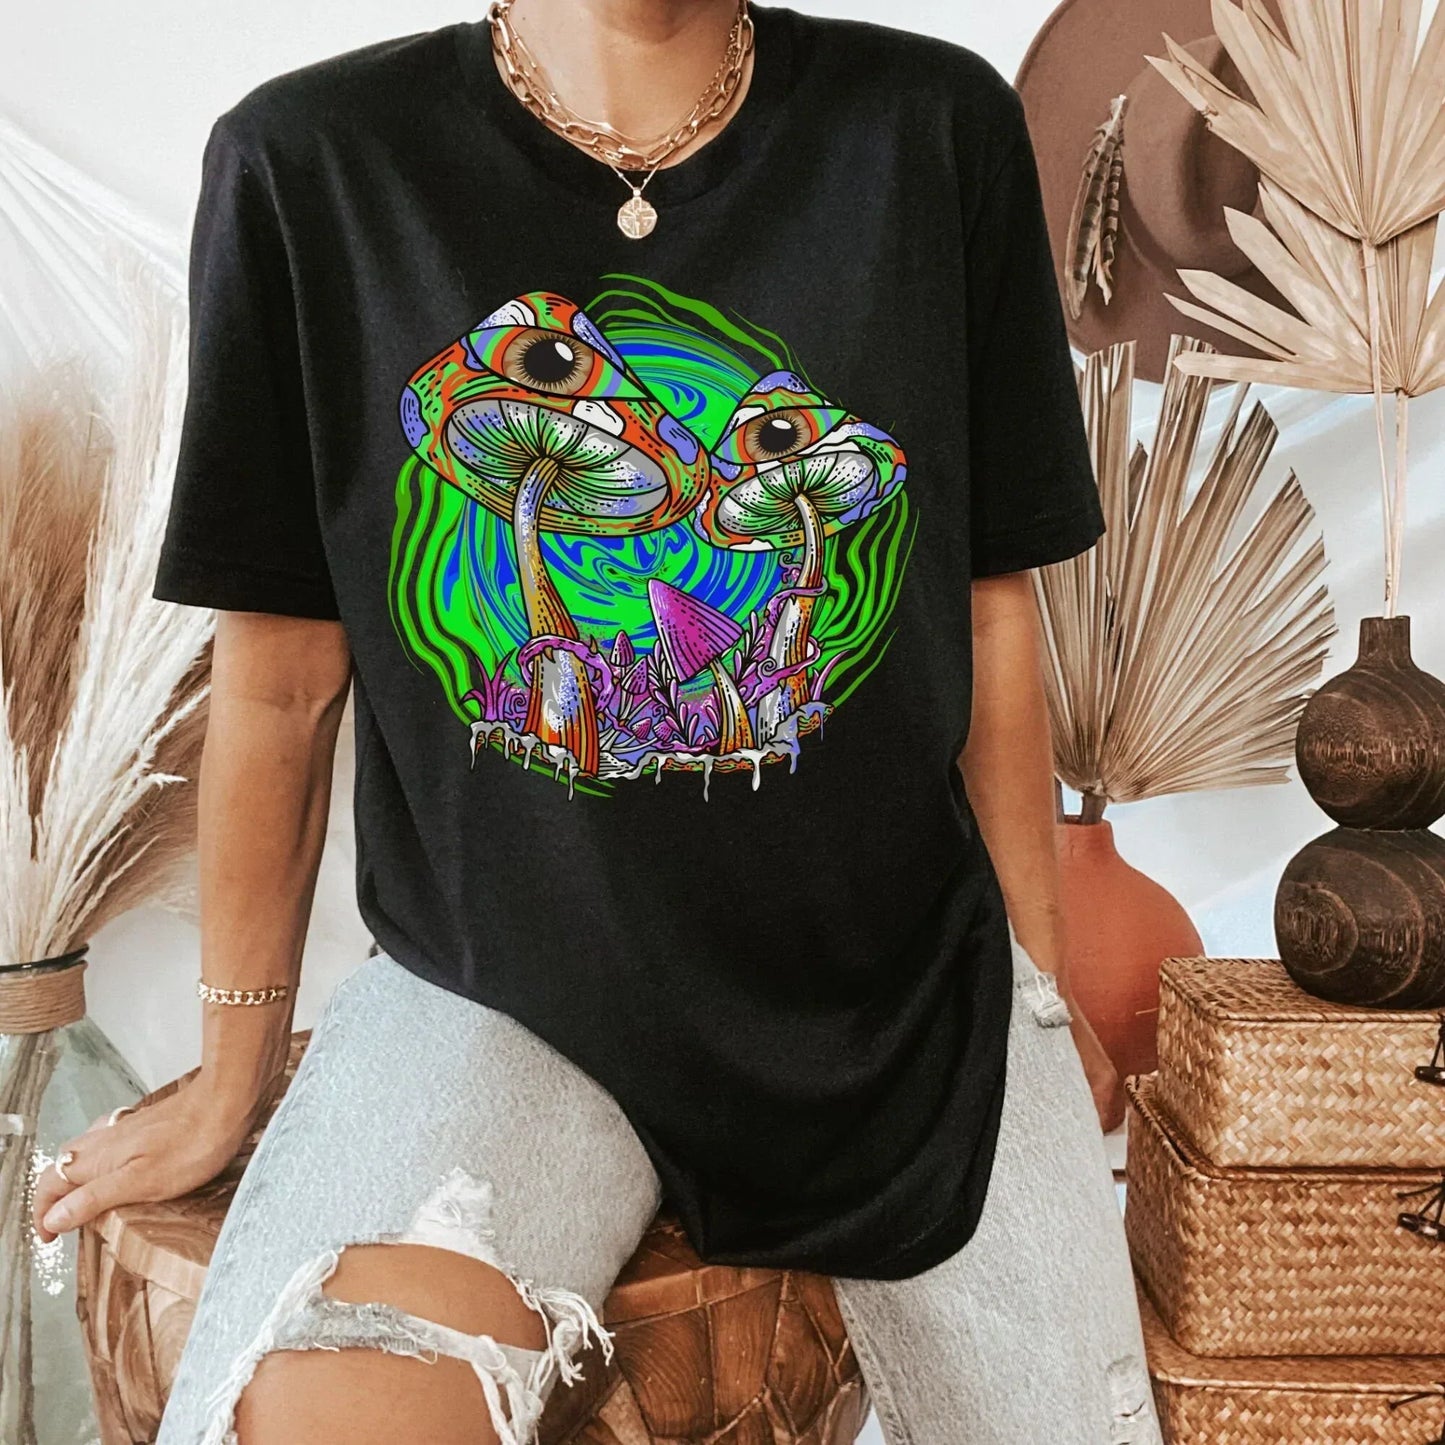 Mushroom Hoodie, Magic Mushroom Sweater, Third Eye Sweatshirt, Celestial Shirt, Goblincore Clothing, Pastel Goth Hoodie, Herbology Alien Tee HMDesignStudioUS